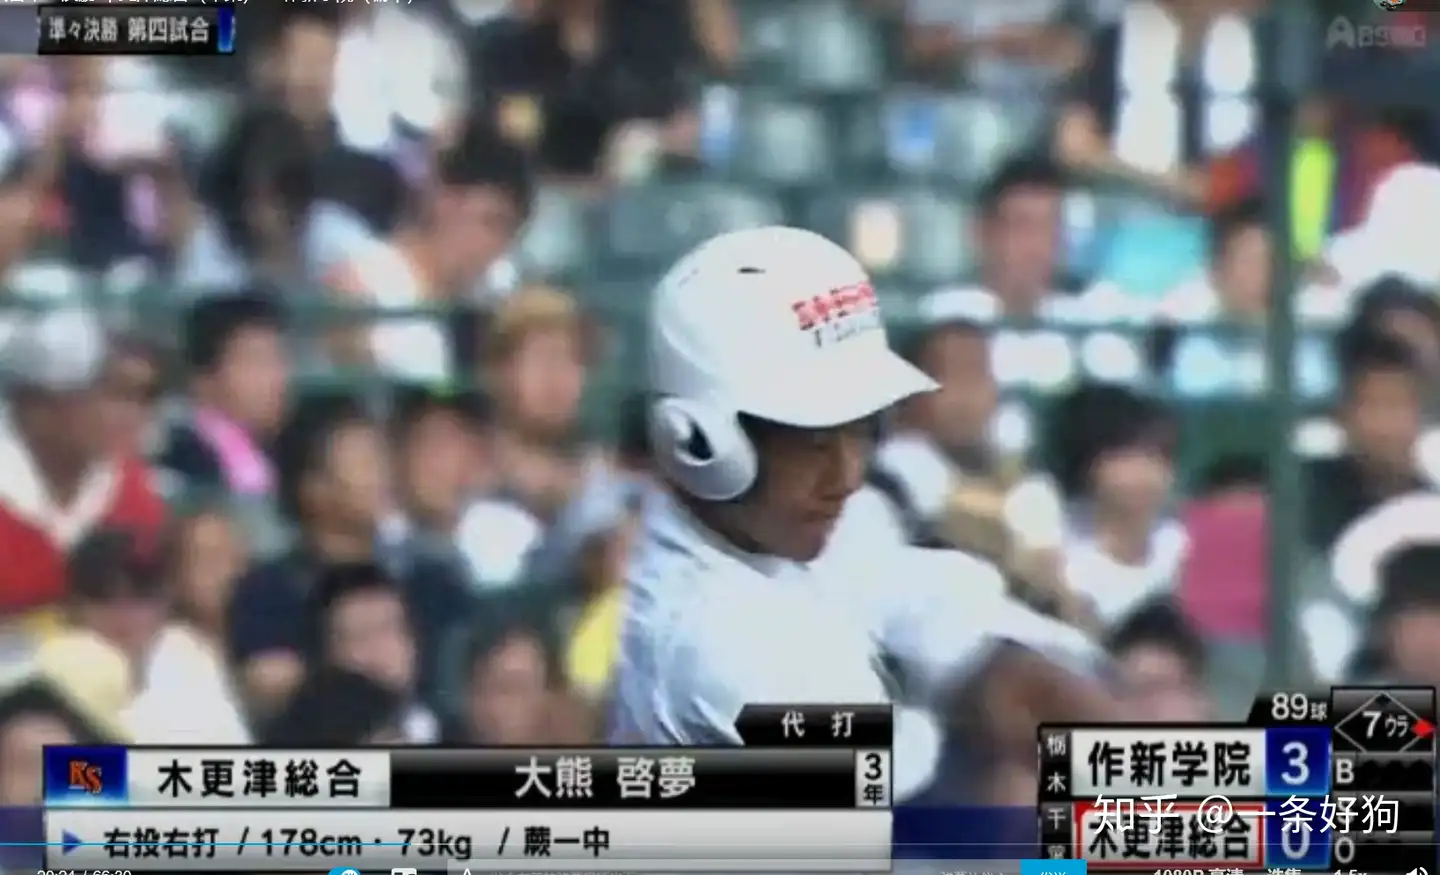 新発売 明豊高校 公式試合野球キャップ レア 57cm - 野球